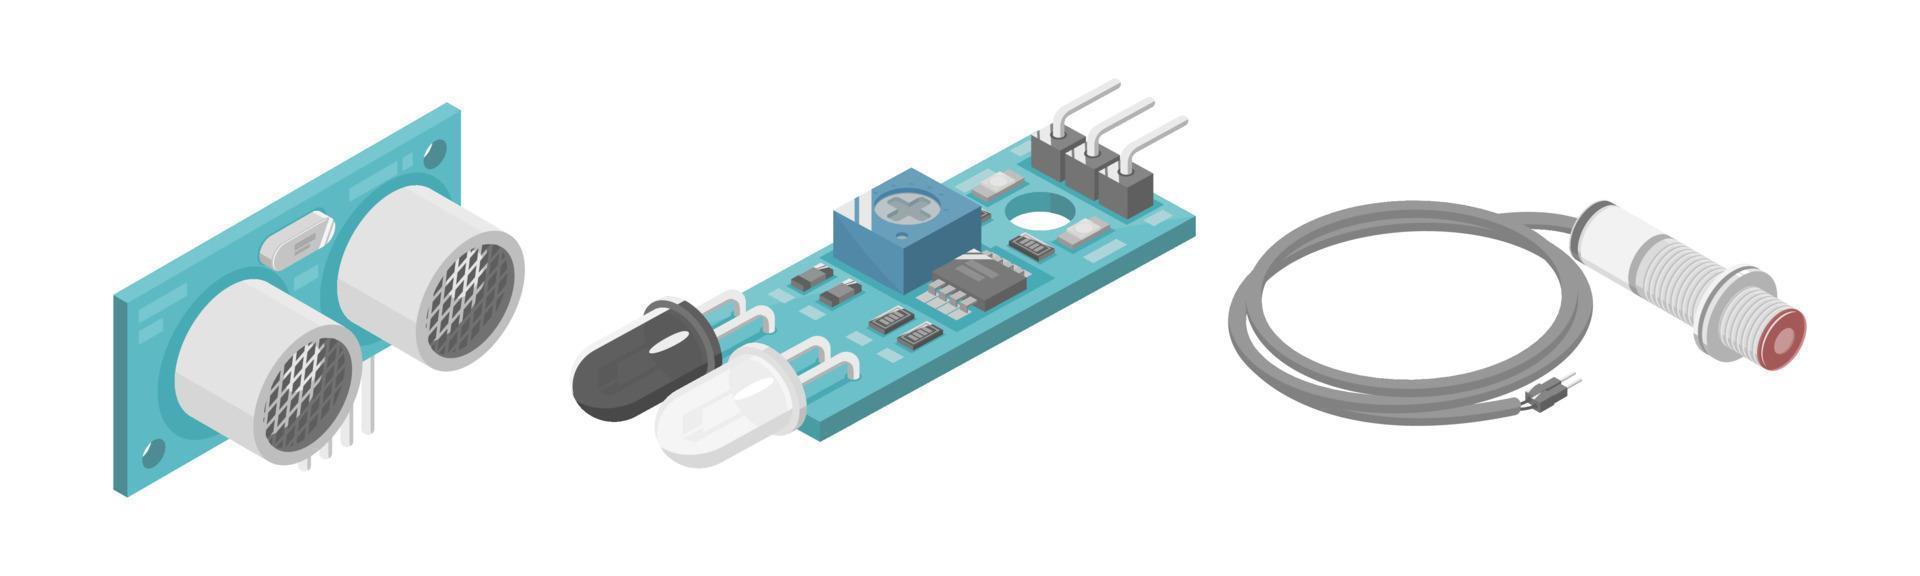 arduino ultrassônico ir módulo infravermelho sensor microcontrolador interface plc componente industrial desenho isométrico vetor